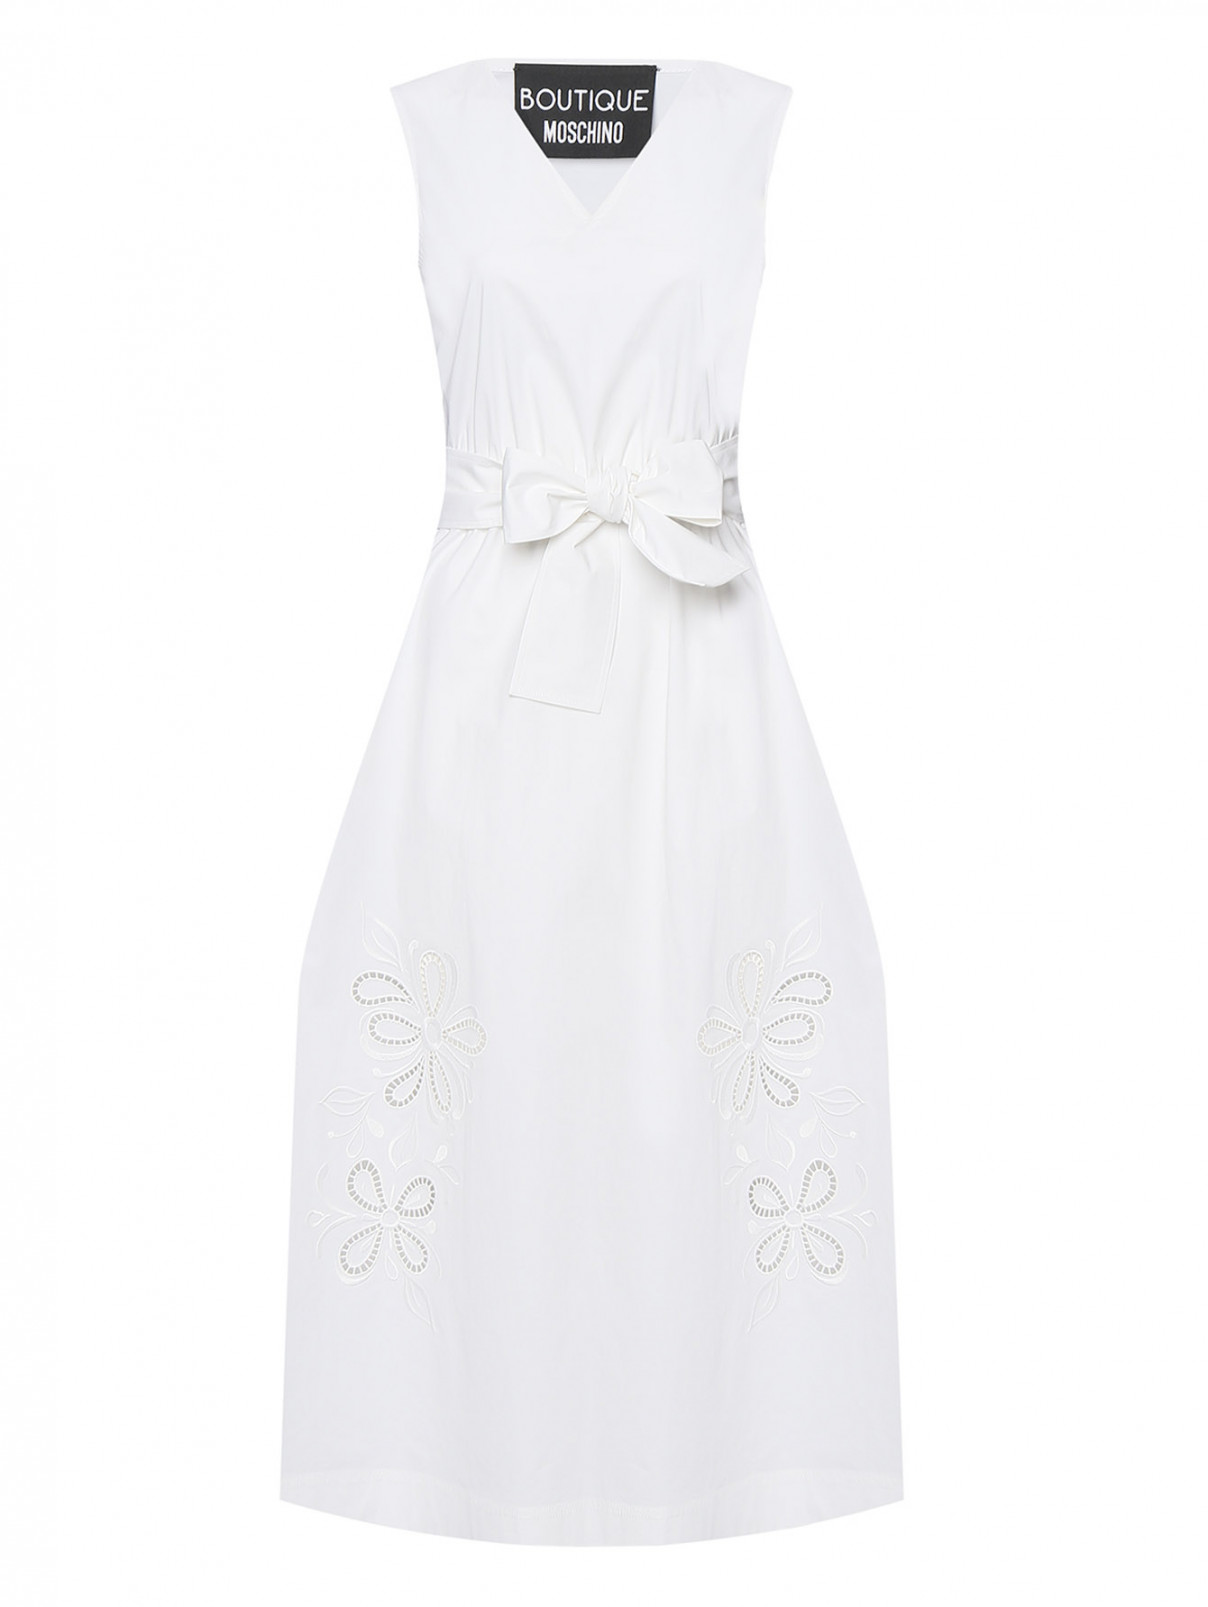 Платье из хлопка с вышивкой Moschino Boutique  –  Общий вид  – Цвет:  Белый